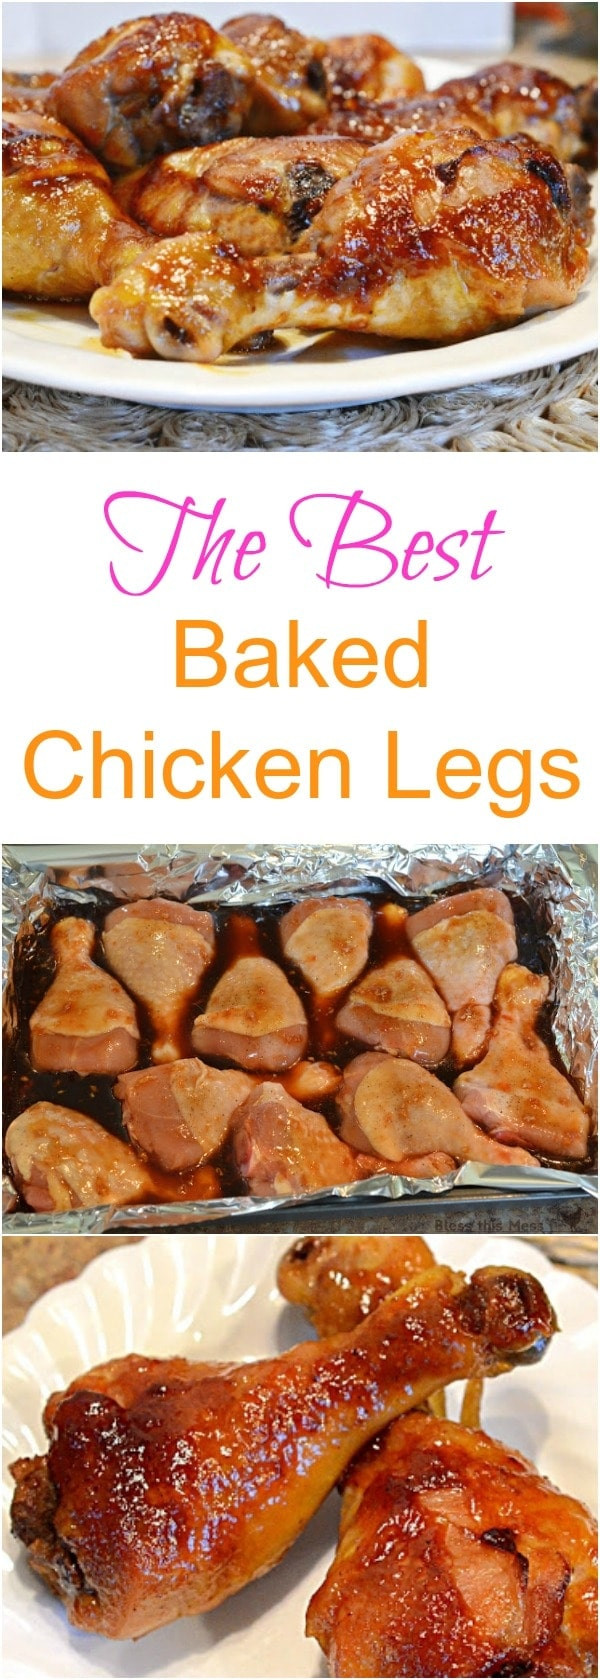 What Temp To Bake Chicken Thighs
 temperature bake chicken drumsticks